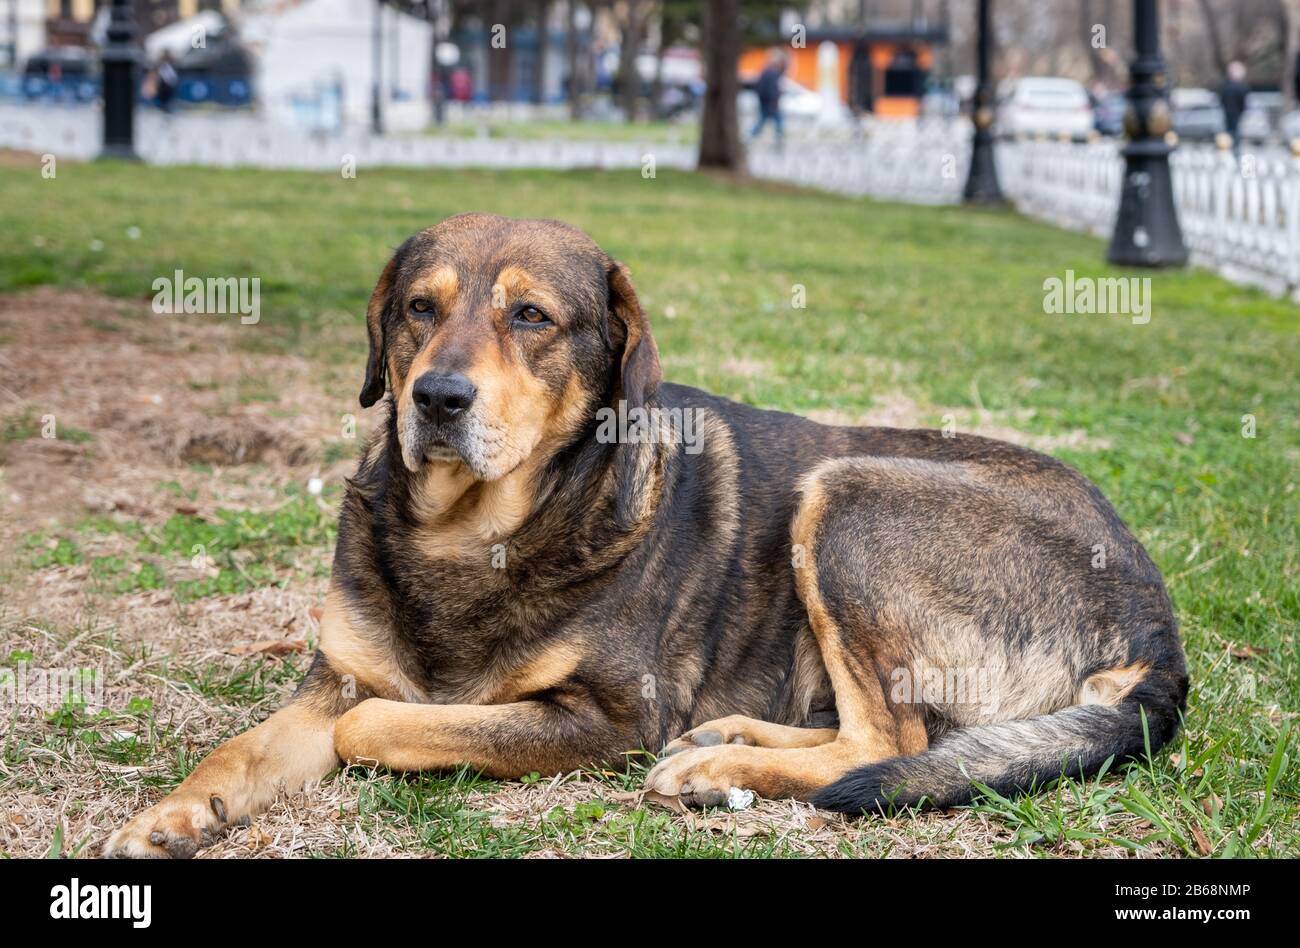 Le grand chien noir est assis sur l'herbe dans le parc Banque D'Images